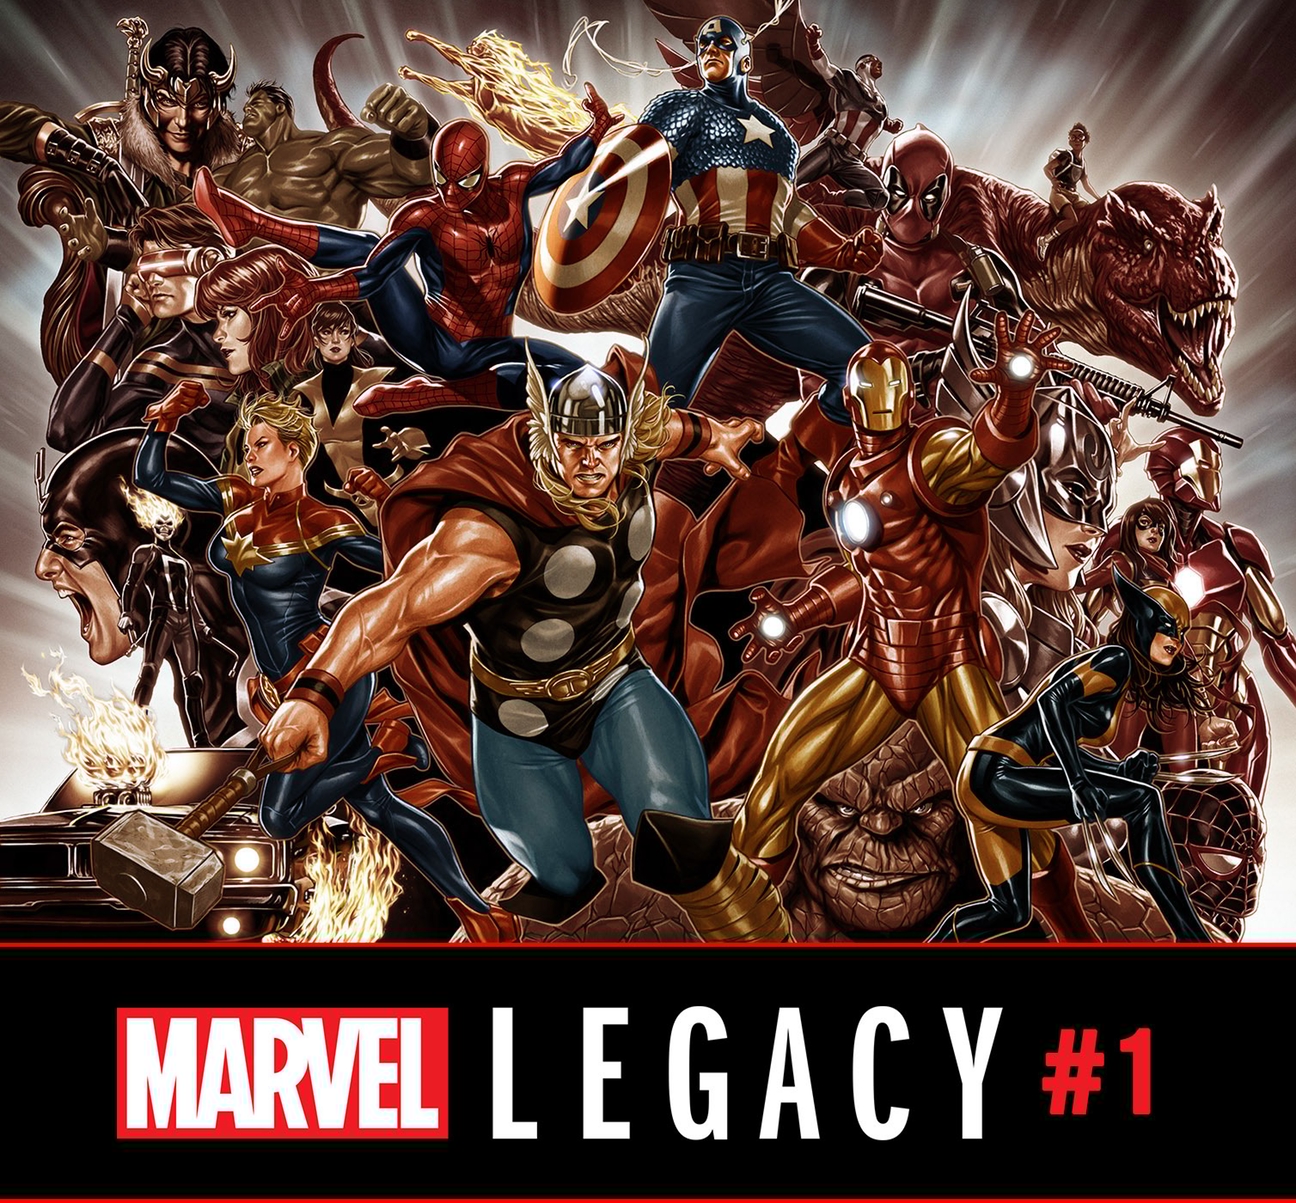 漫威聲稱 Marvel Legacy 會改變漫畫產業